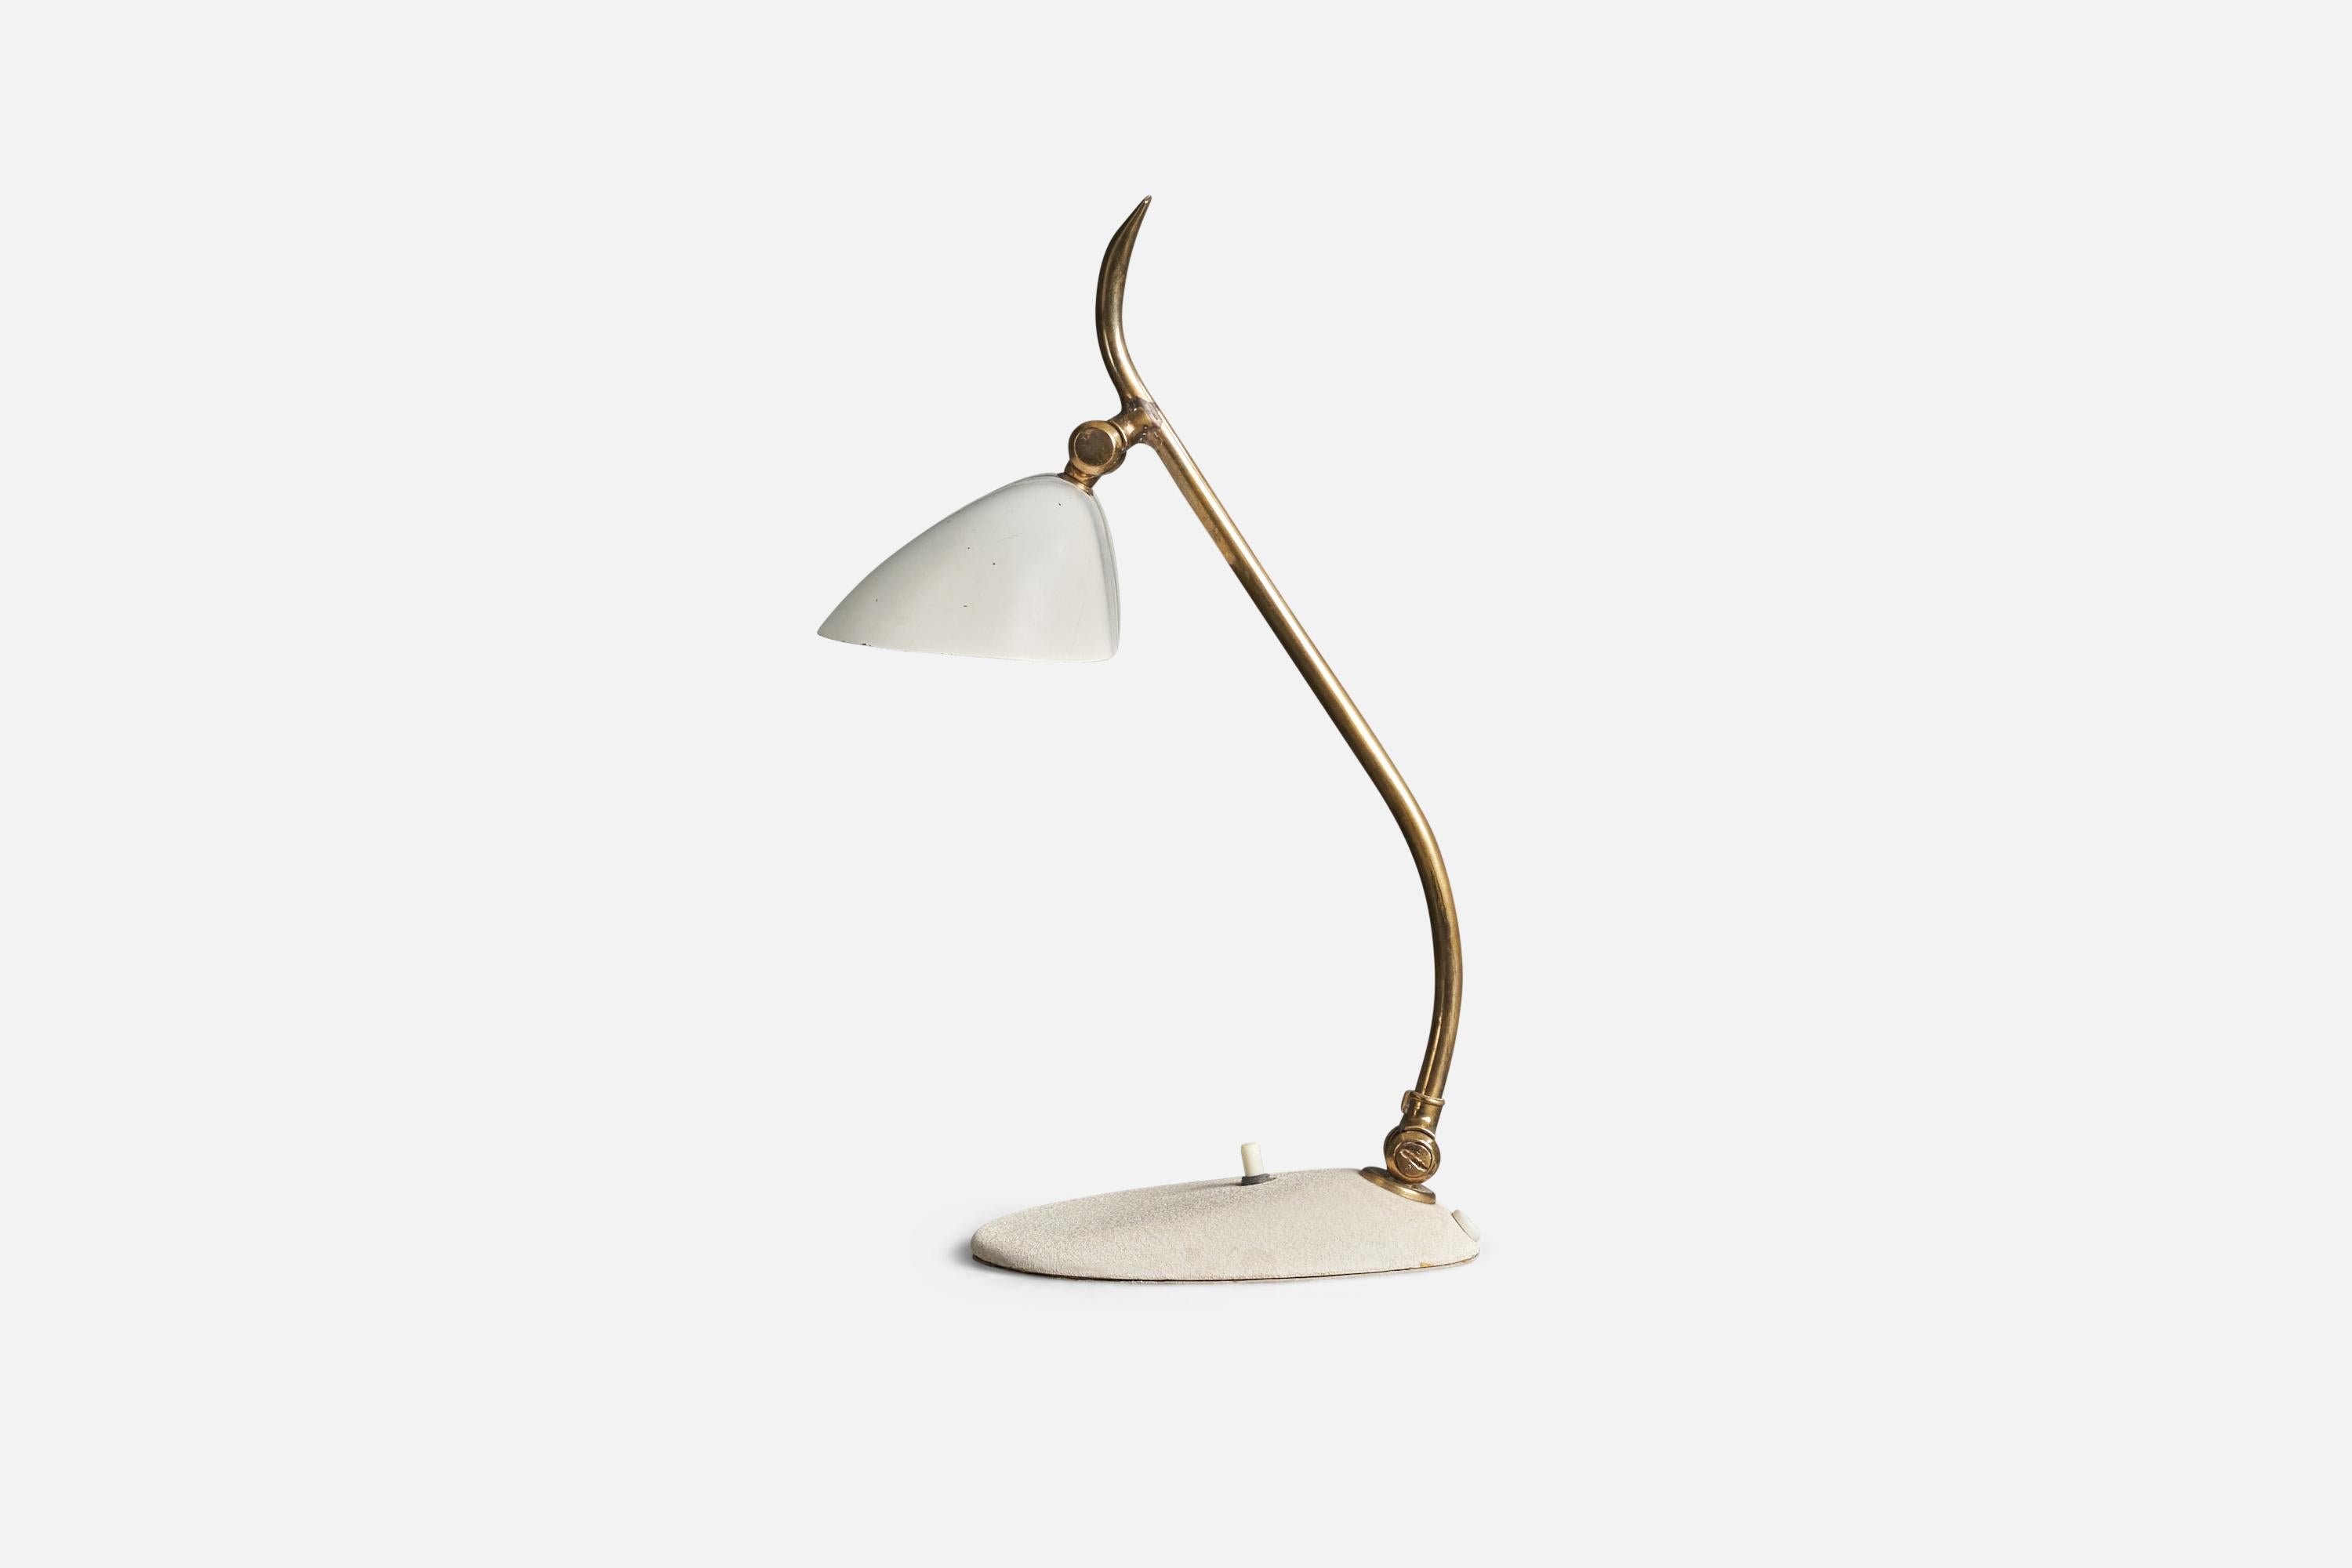 Lampe de table en laiton et métal laqué blanc, conçue et produite par un designer italien, Italie, années 1950.

Dimensions variables, mesurées comme illustré dans la première image.

La douille accepte les ampoules E-14.

Il n'y a pas de puissance